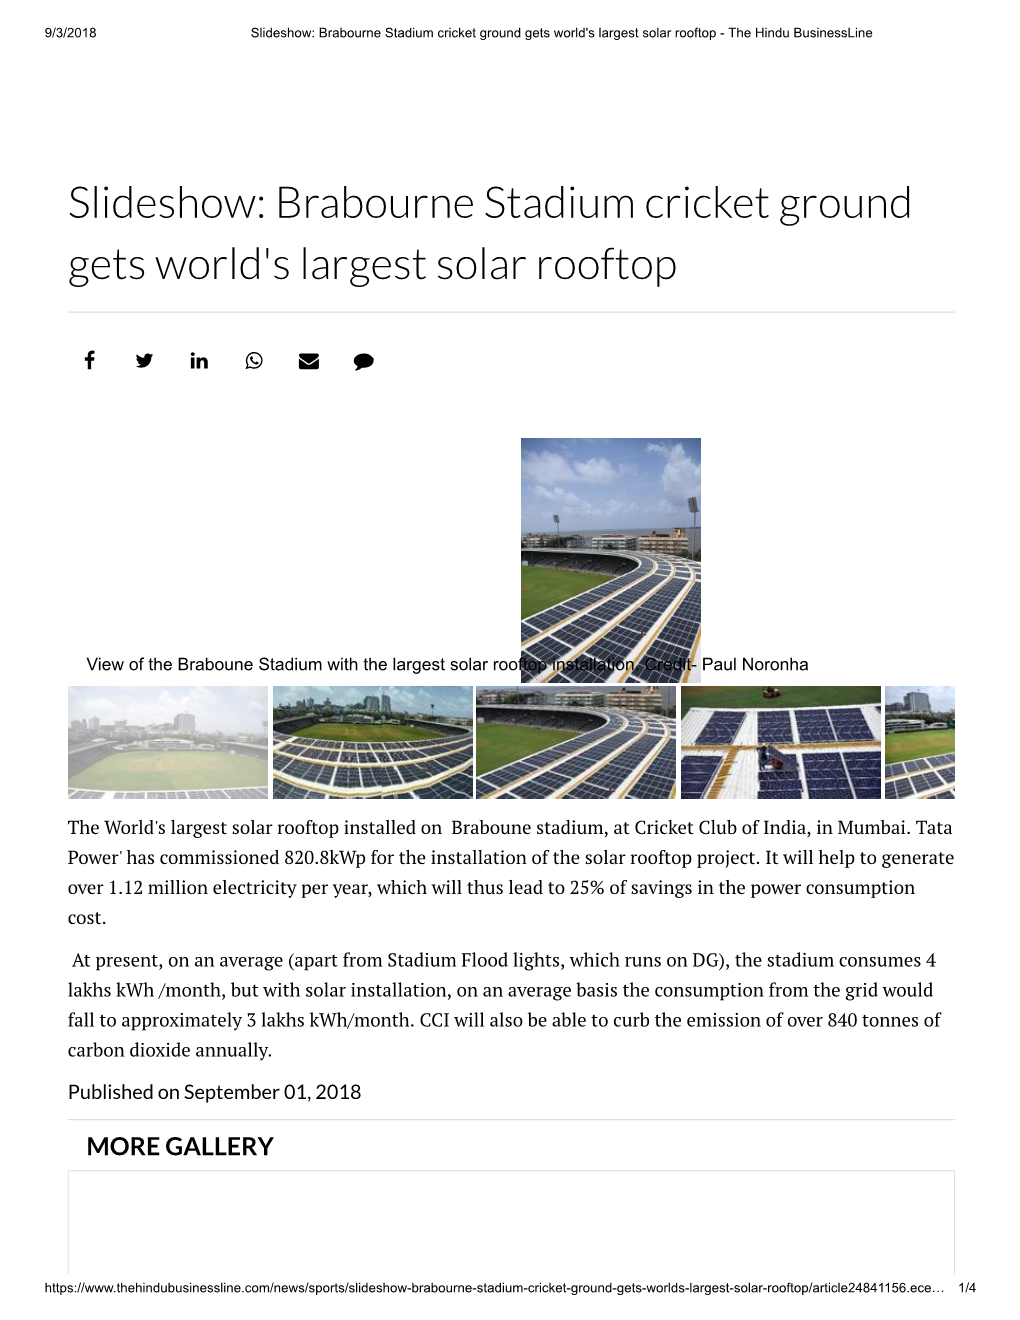 Slideshow: Brabourne Stadium Cricket Ground Gets World's Largest Solar Rooftop - the Hindu Businessline